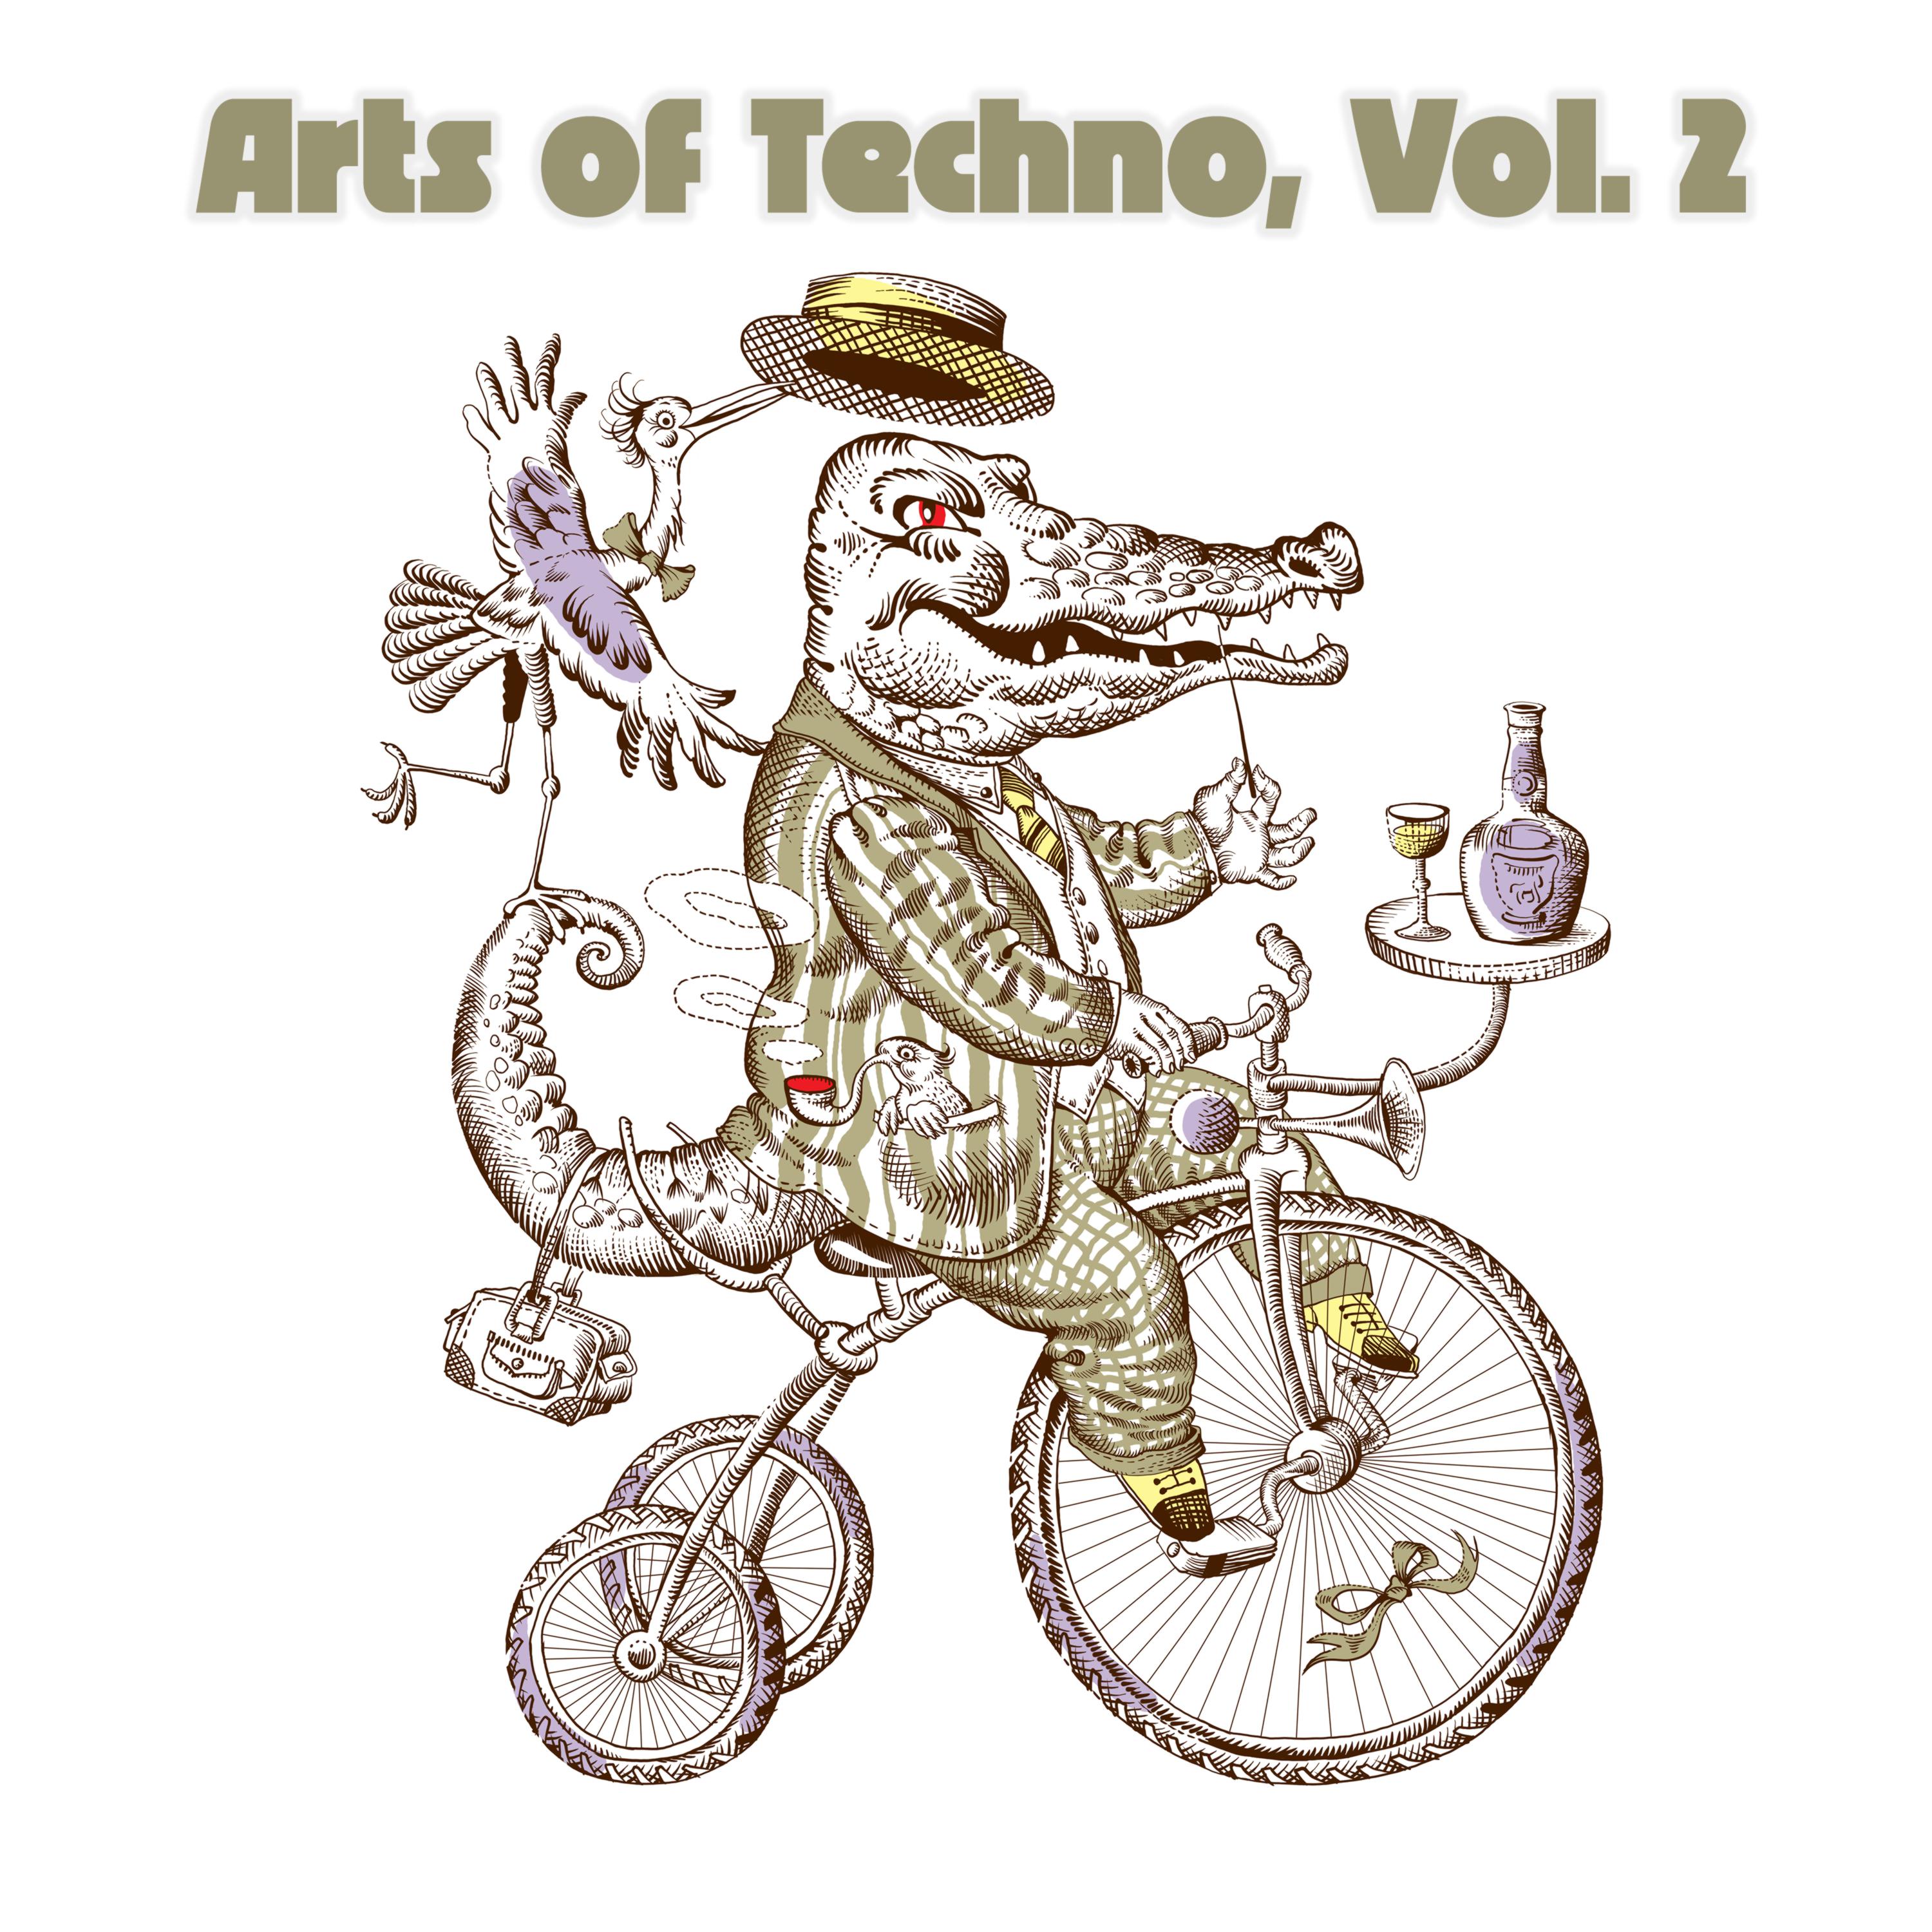 Arts of Techno, Vol. 2